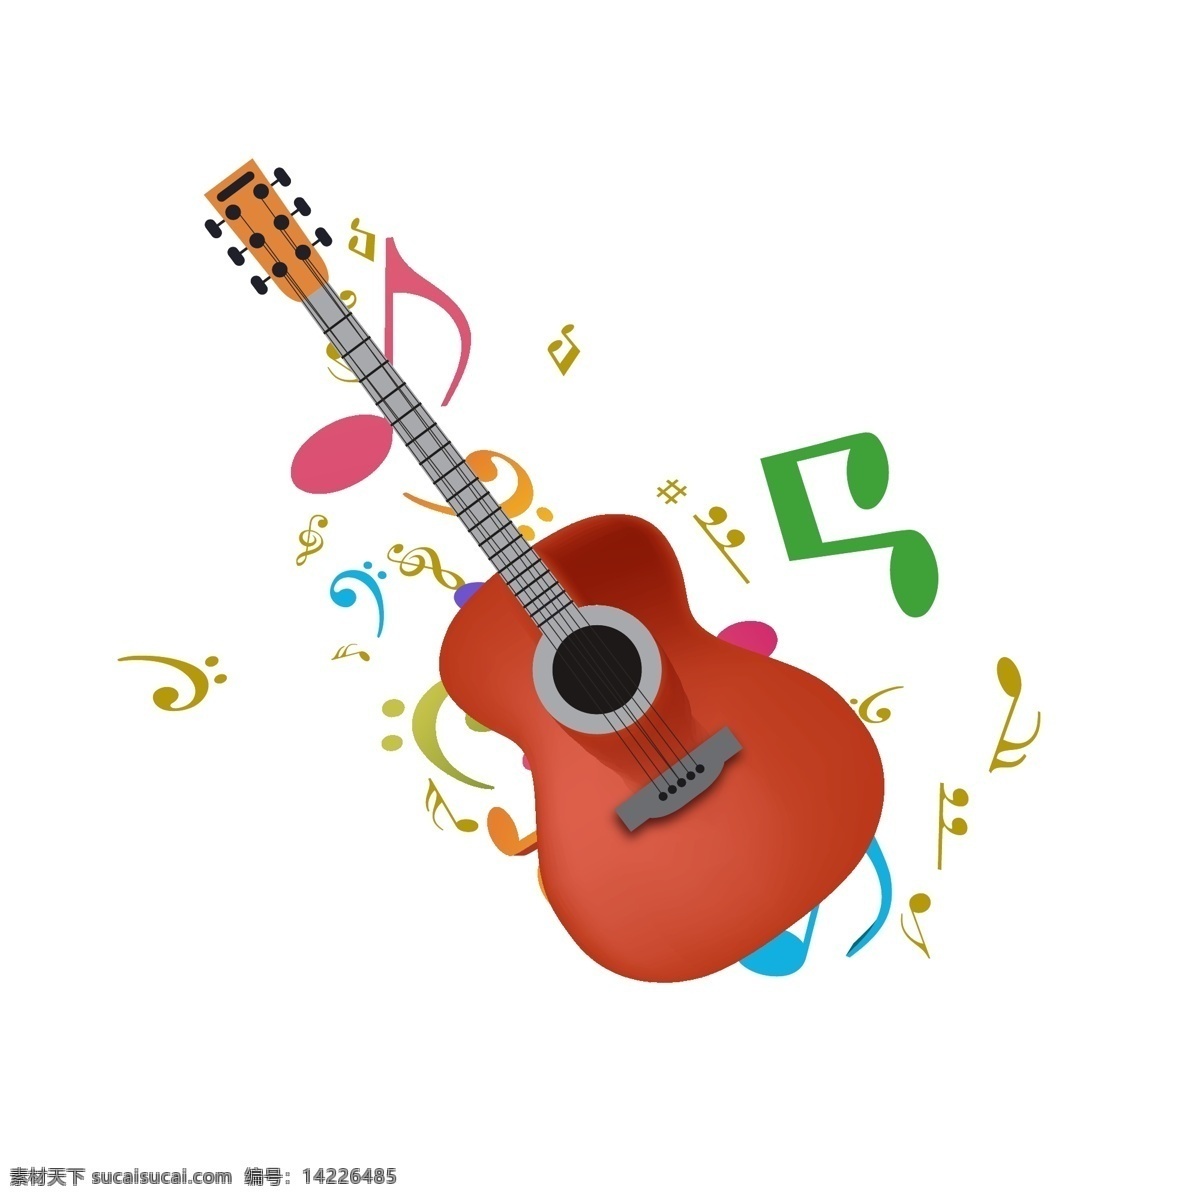 音乐 乐 符 吉他 插画 红色的吉他 彩色的乐符 好听的音乐 漂亮的吉他 吉他装饰 乐器吉他 吉他插画